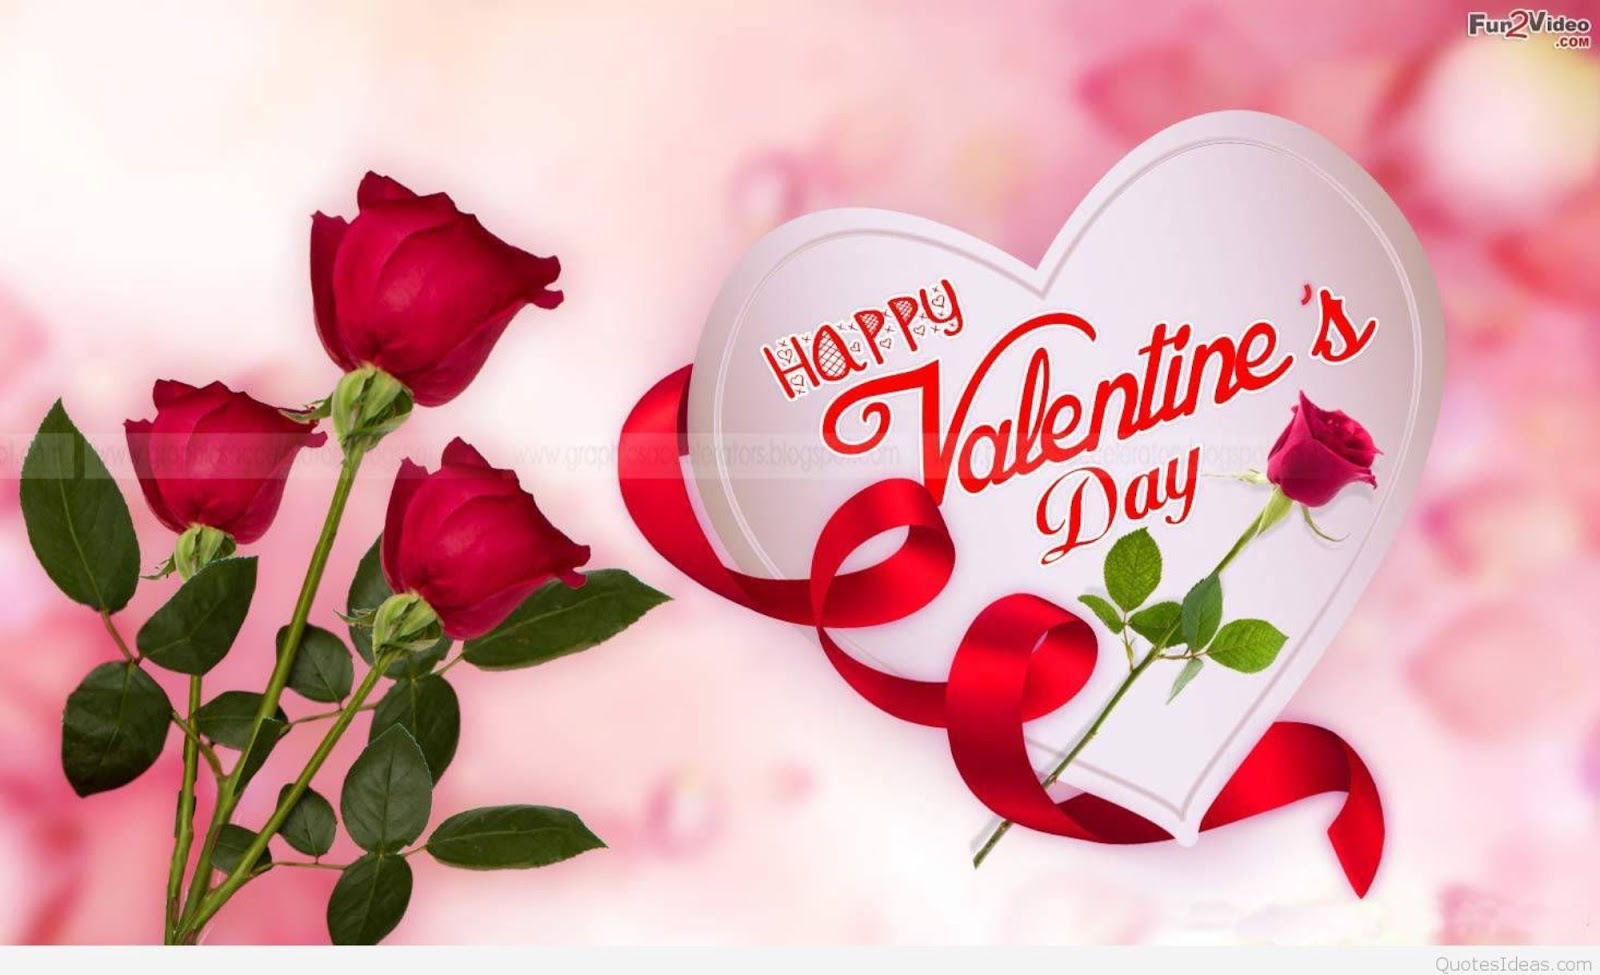 Gambar Romantis Valentine Kasih Sayang Untuk Pacar,Teman 